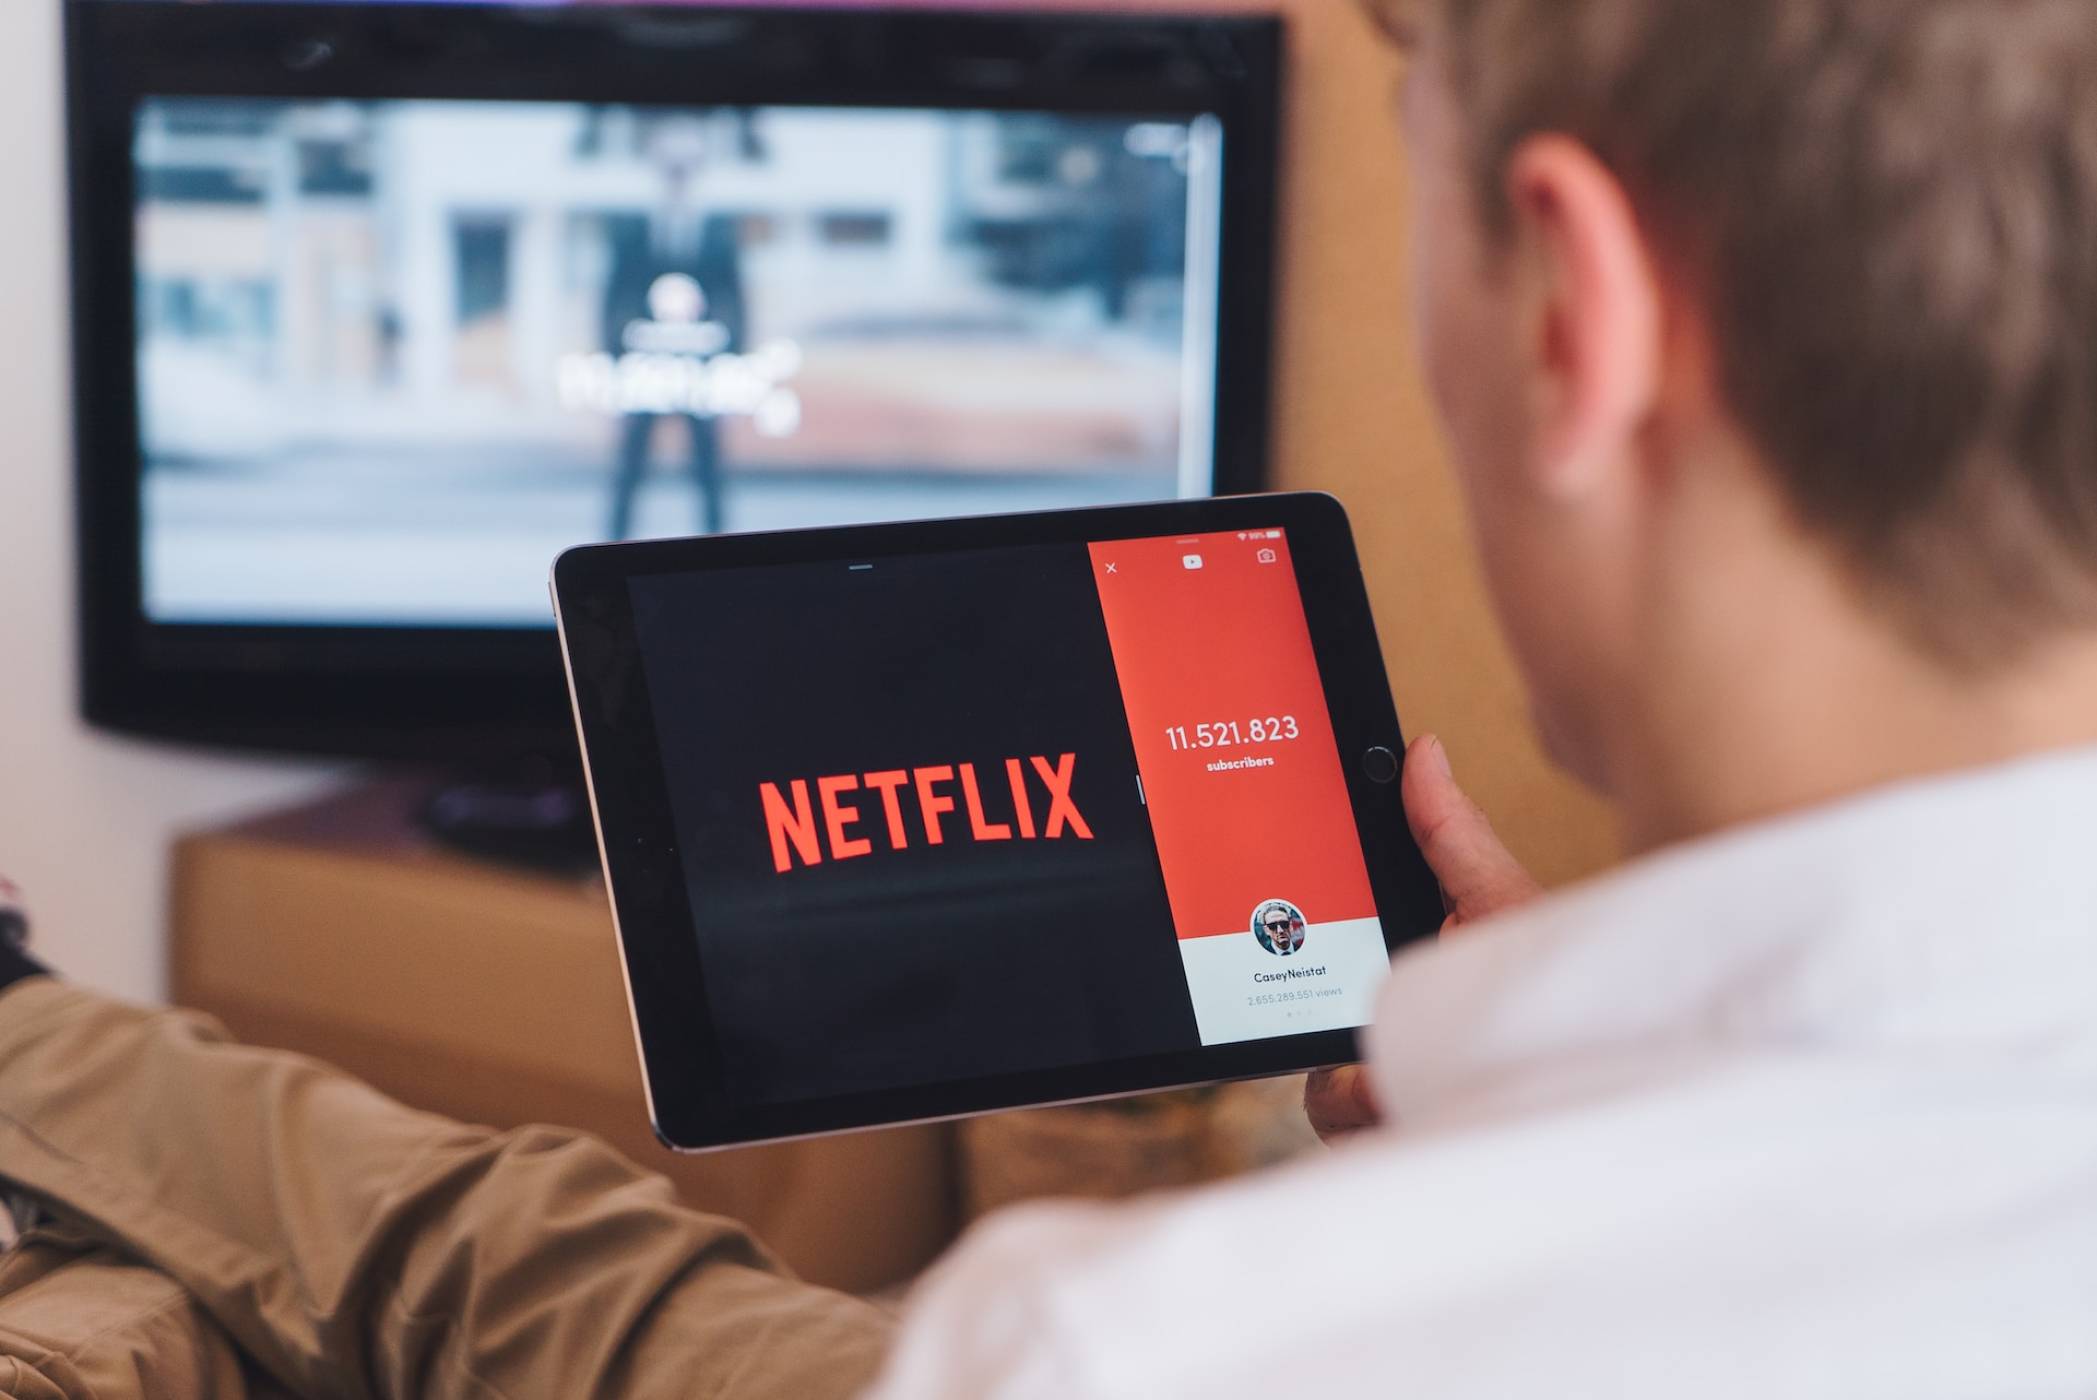 Netflix може да повиши цените отново веднага след края на продуцентската стачка